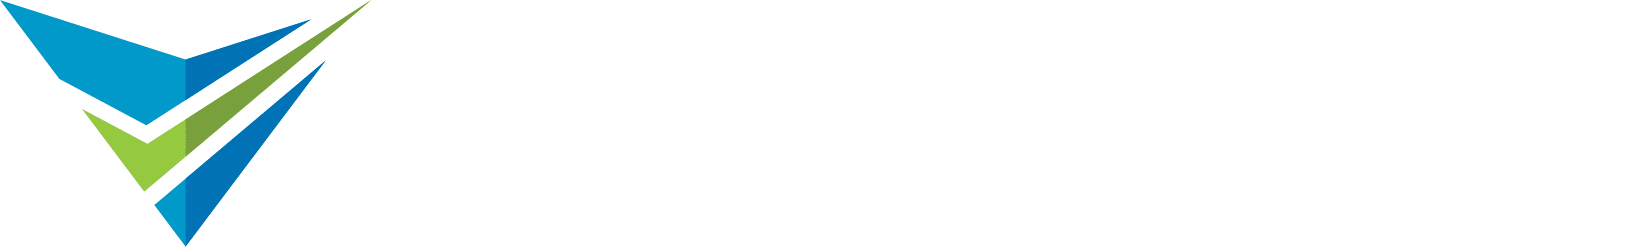 Executive Virtual Assistants Vexa Services